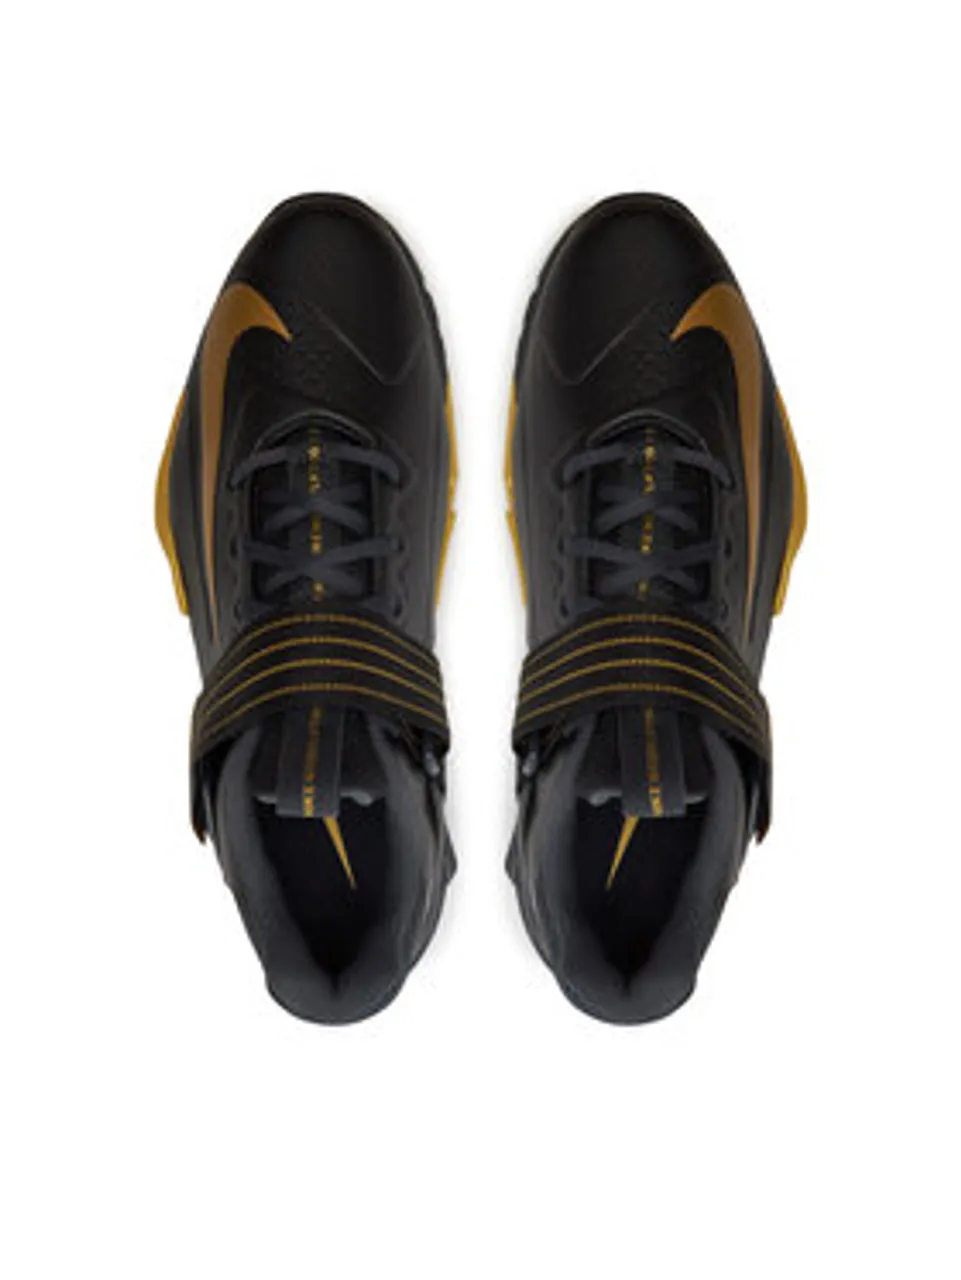 Nike Schuhe Savaleos CV5708 001 Schwarz